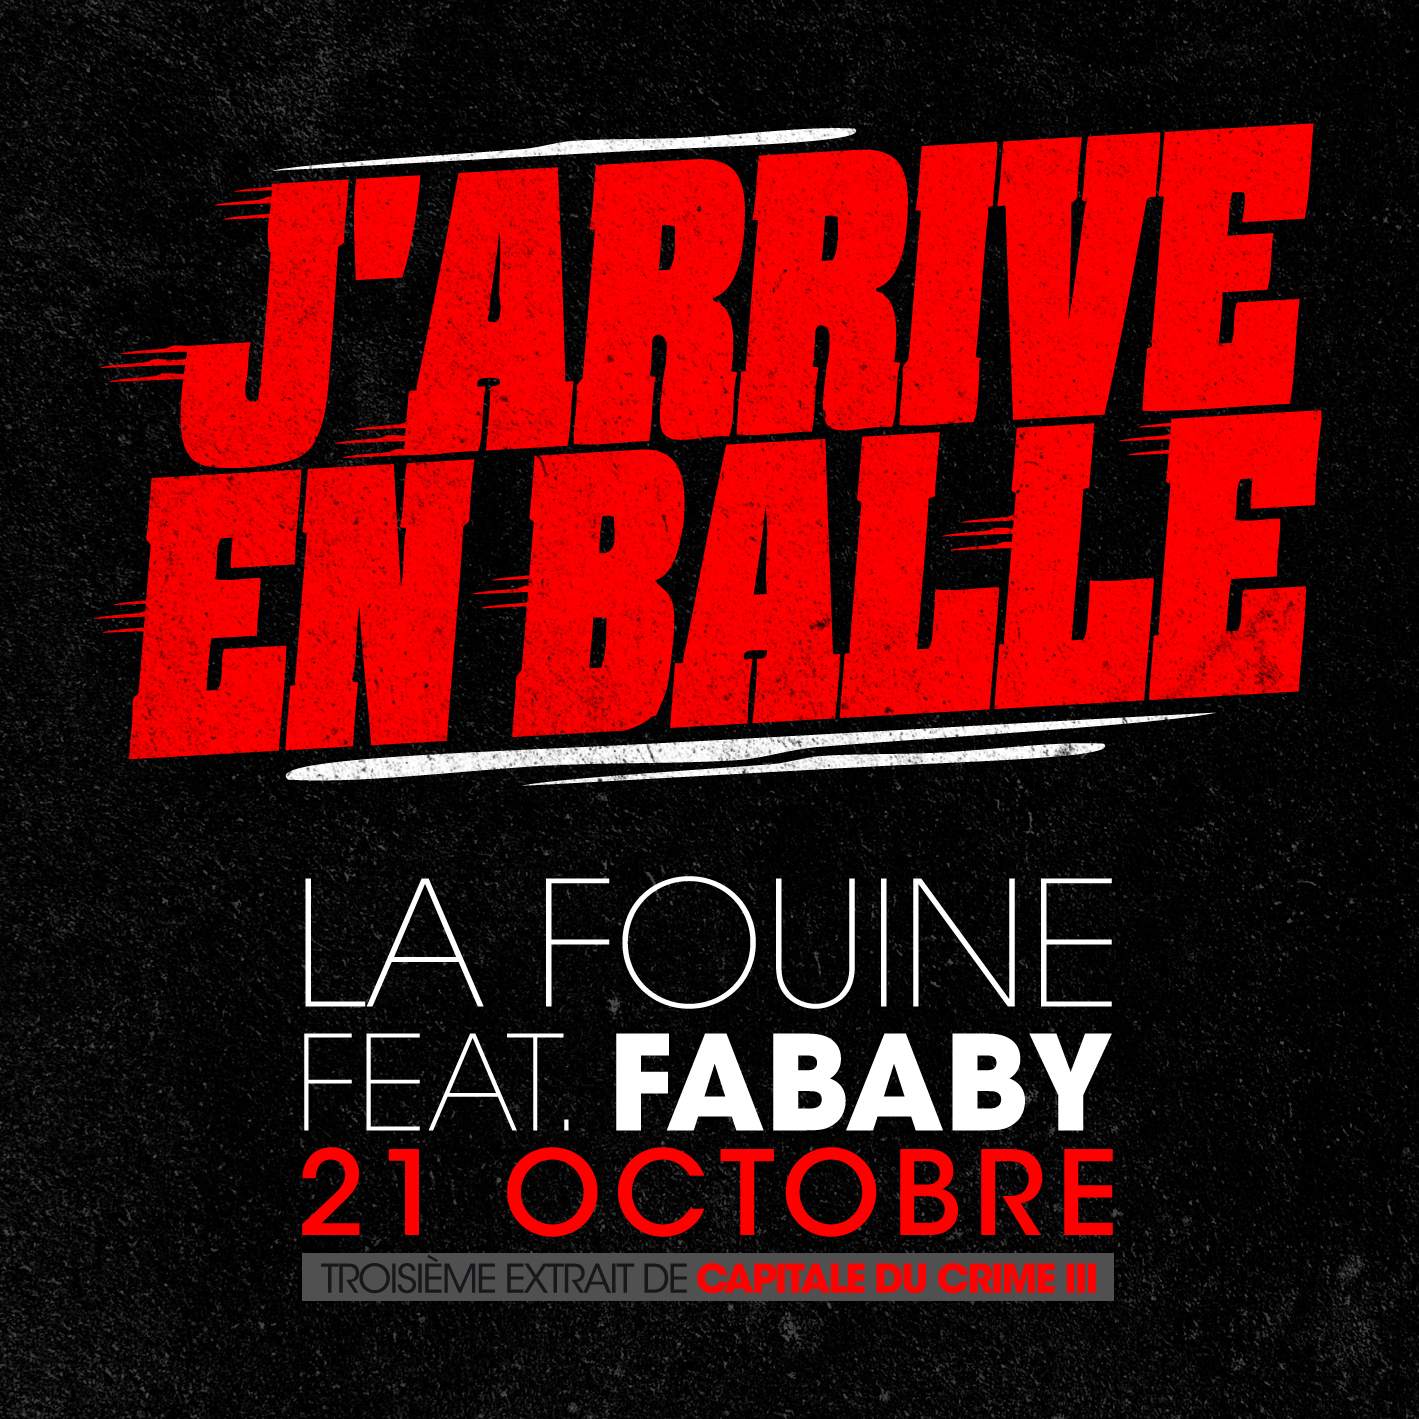 La Fouine f/ Fababy - J'arrive en balle